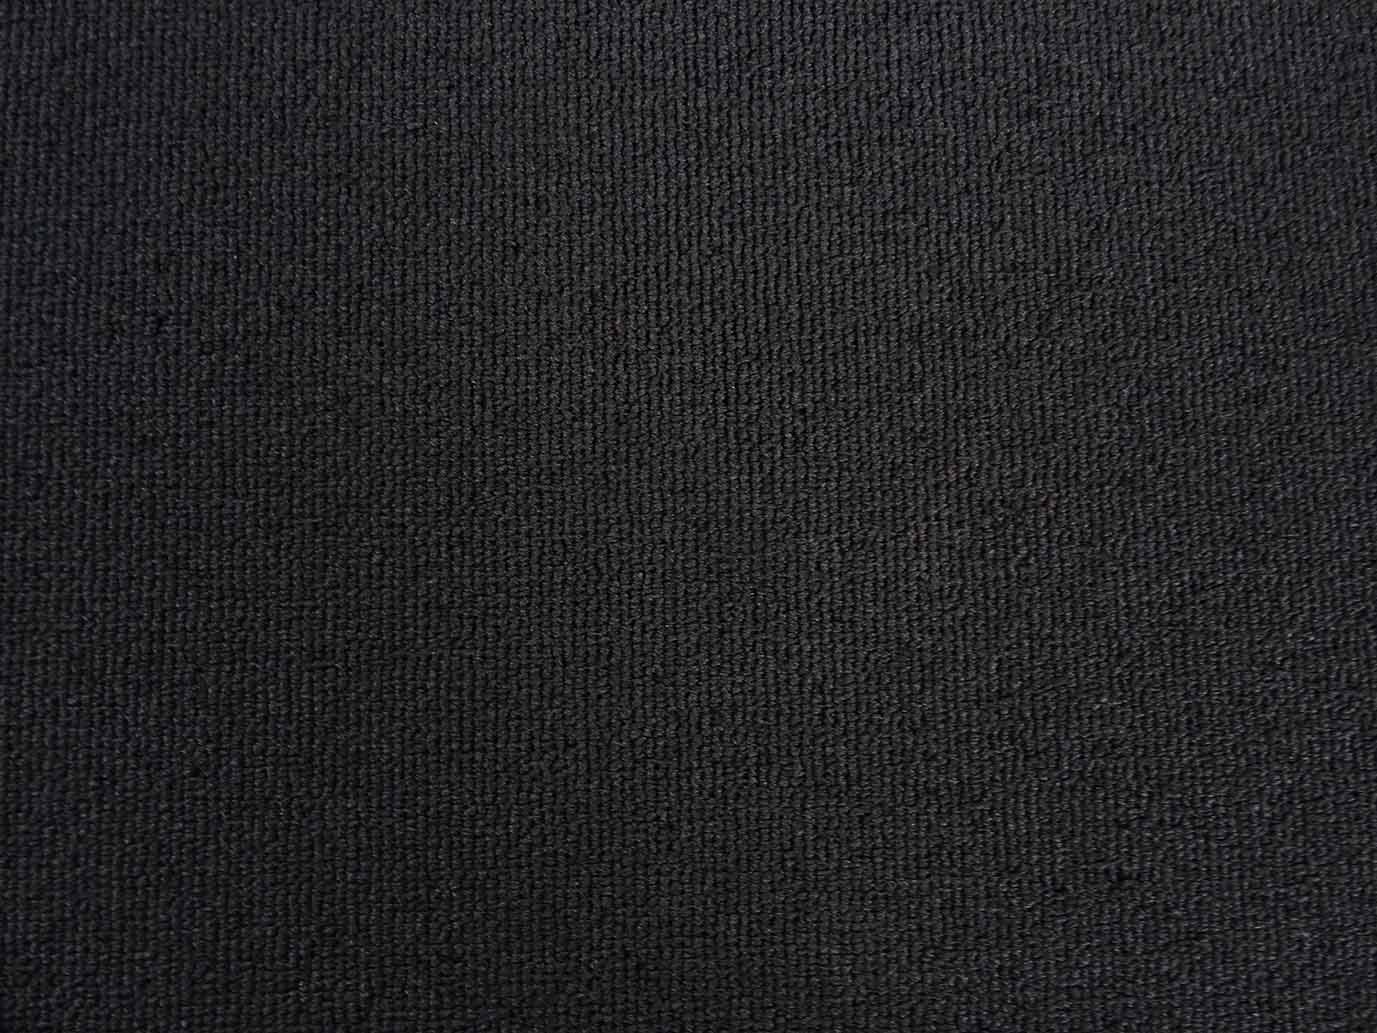 Naaldvilt corduroy tapijt (2 meter breed)